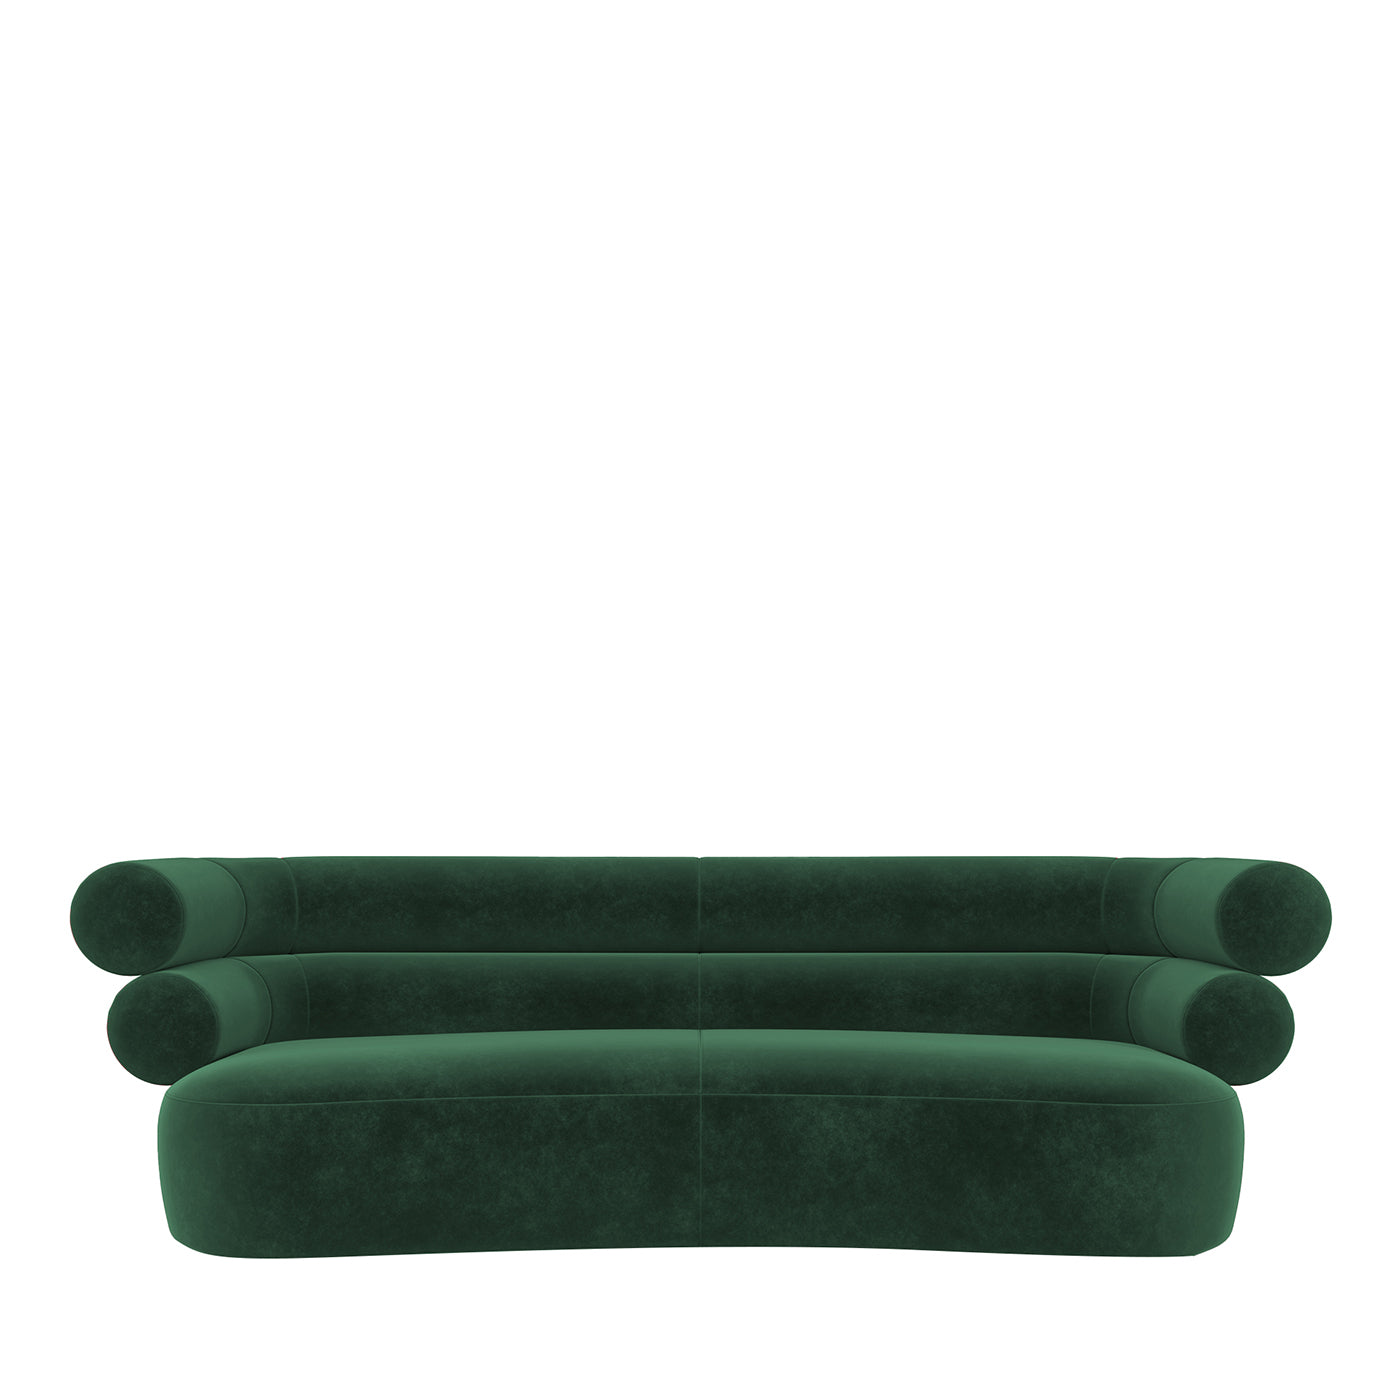 Tube Emerald-Green Velvet Sofa - Main view